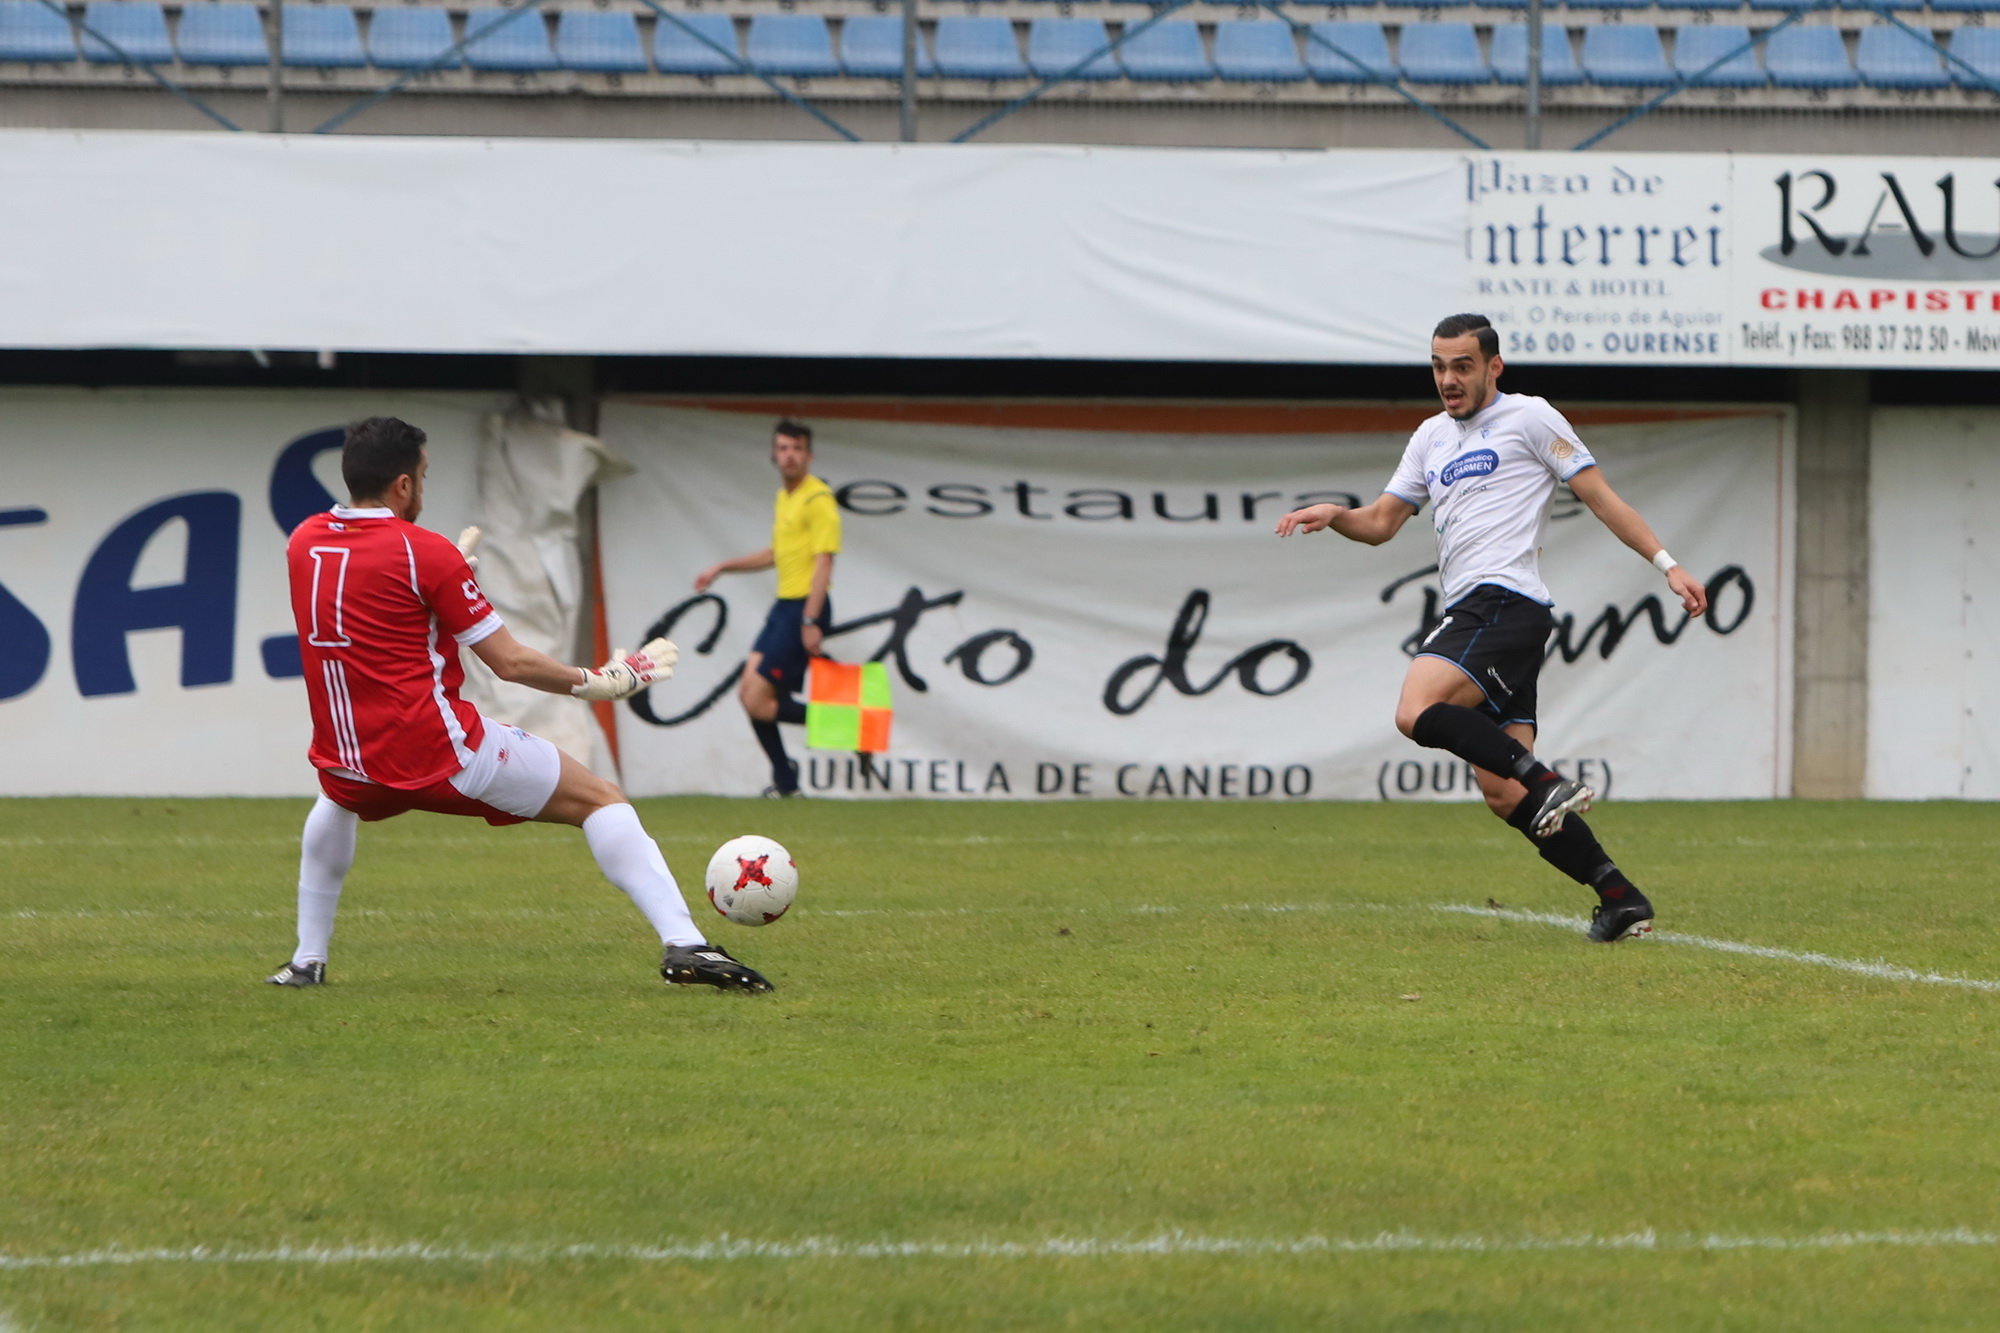 Gran juego y victoria del Ourense CF ante el Villalonga